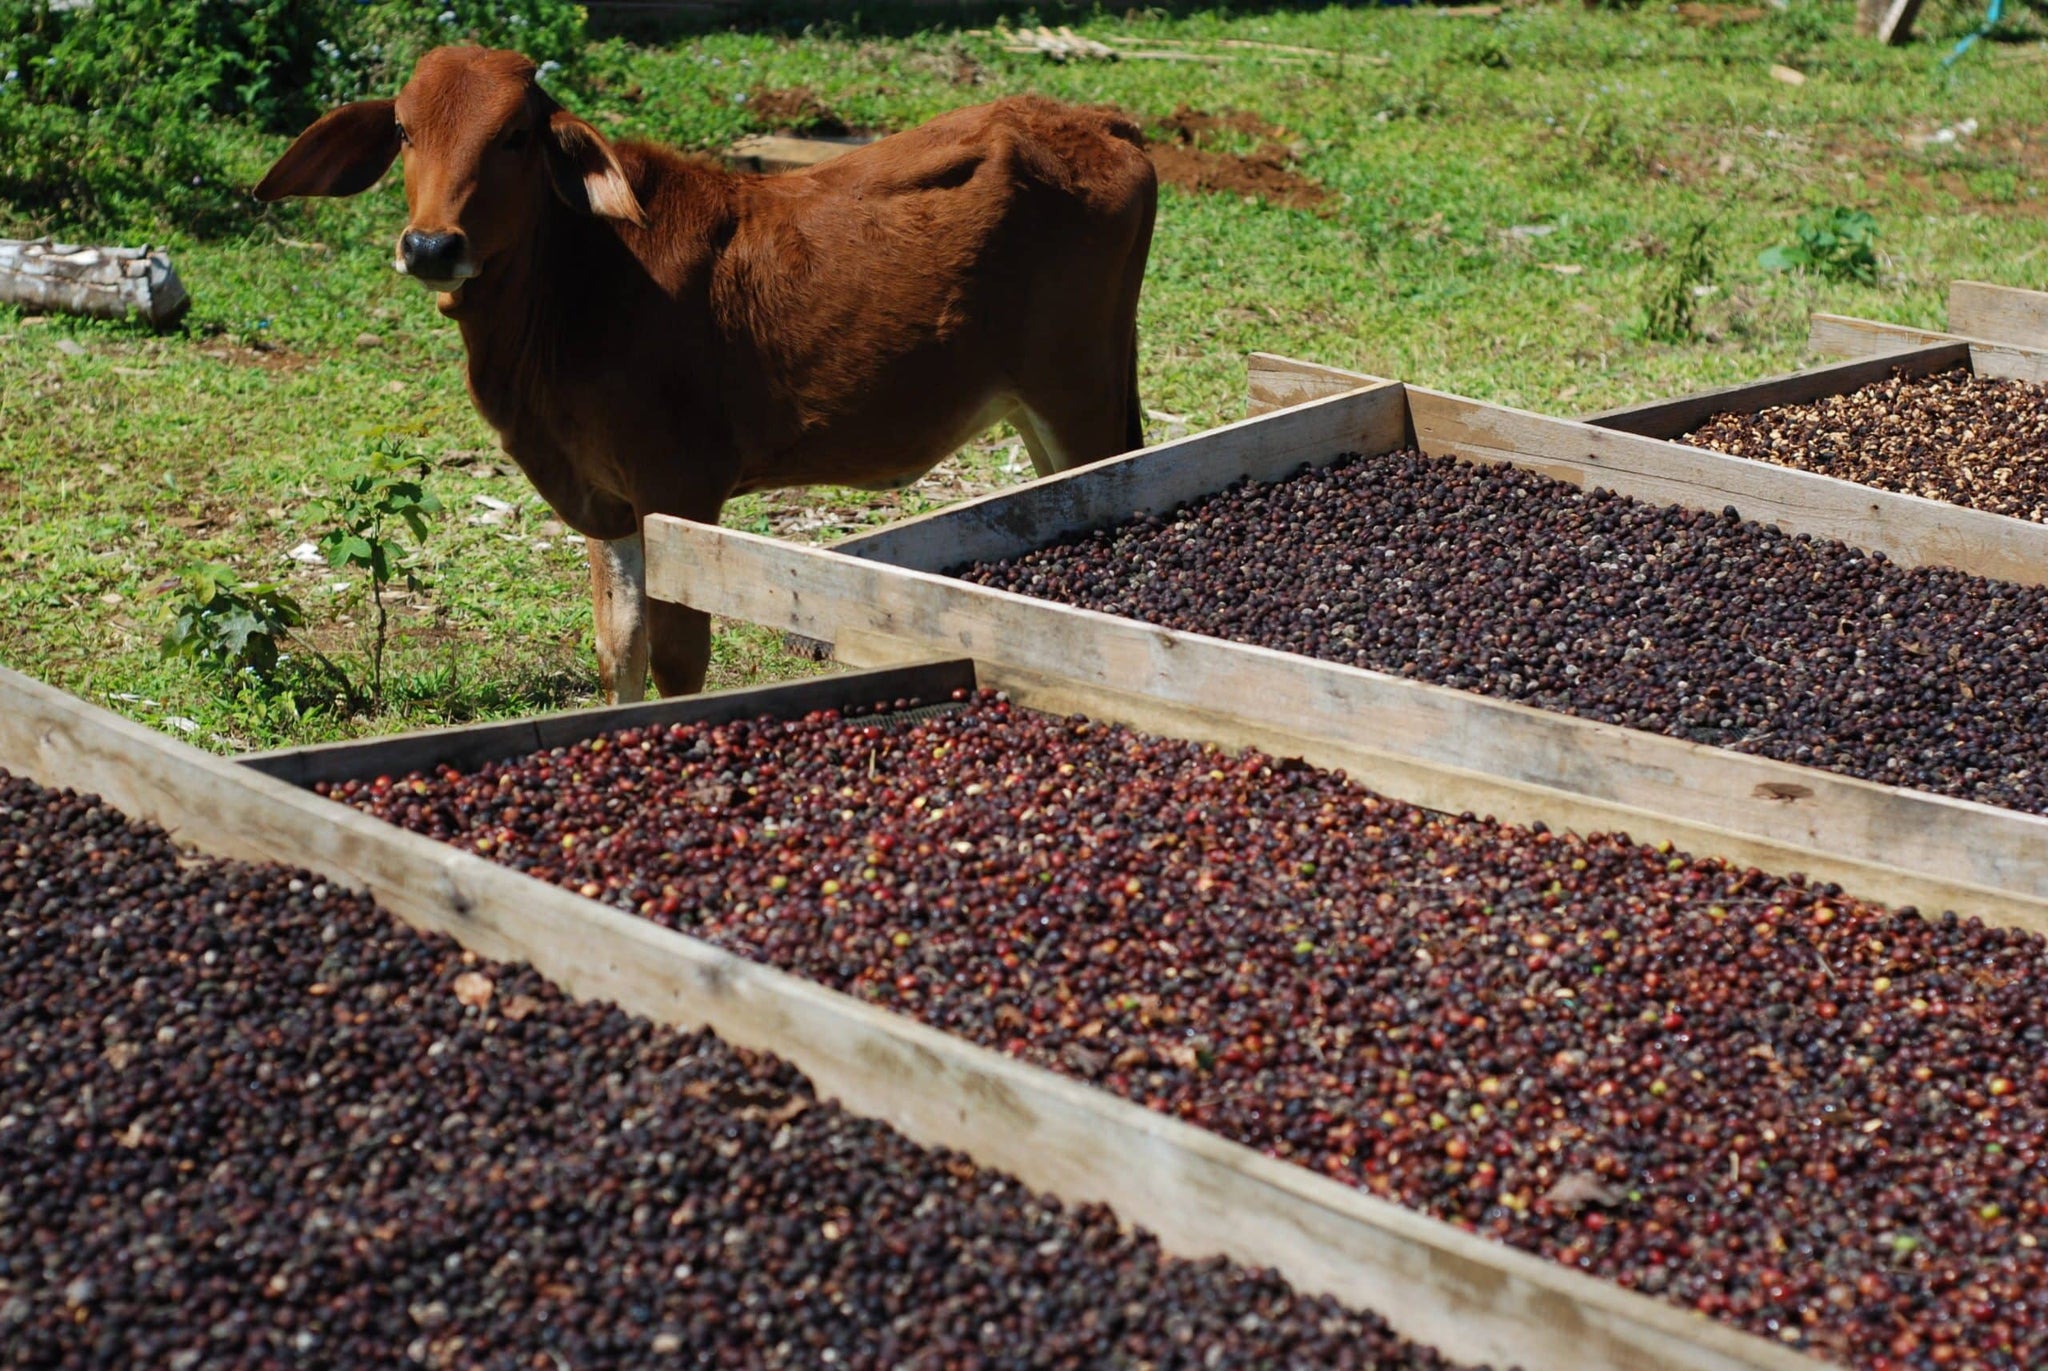 FI-LAN’THRO-PE coffee farm in Laos